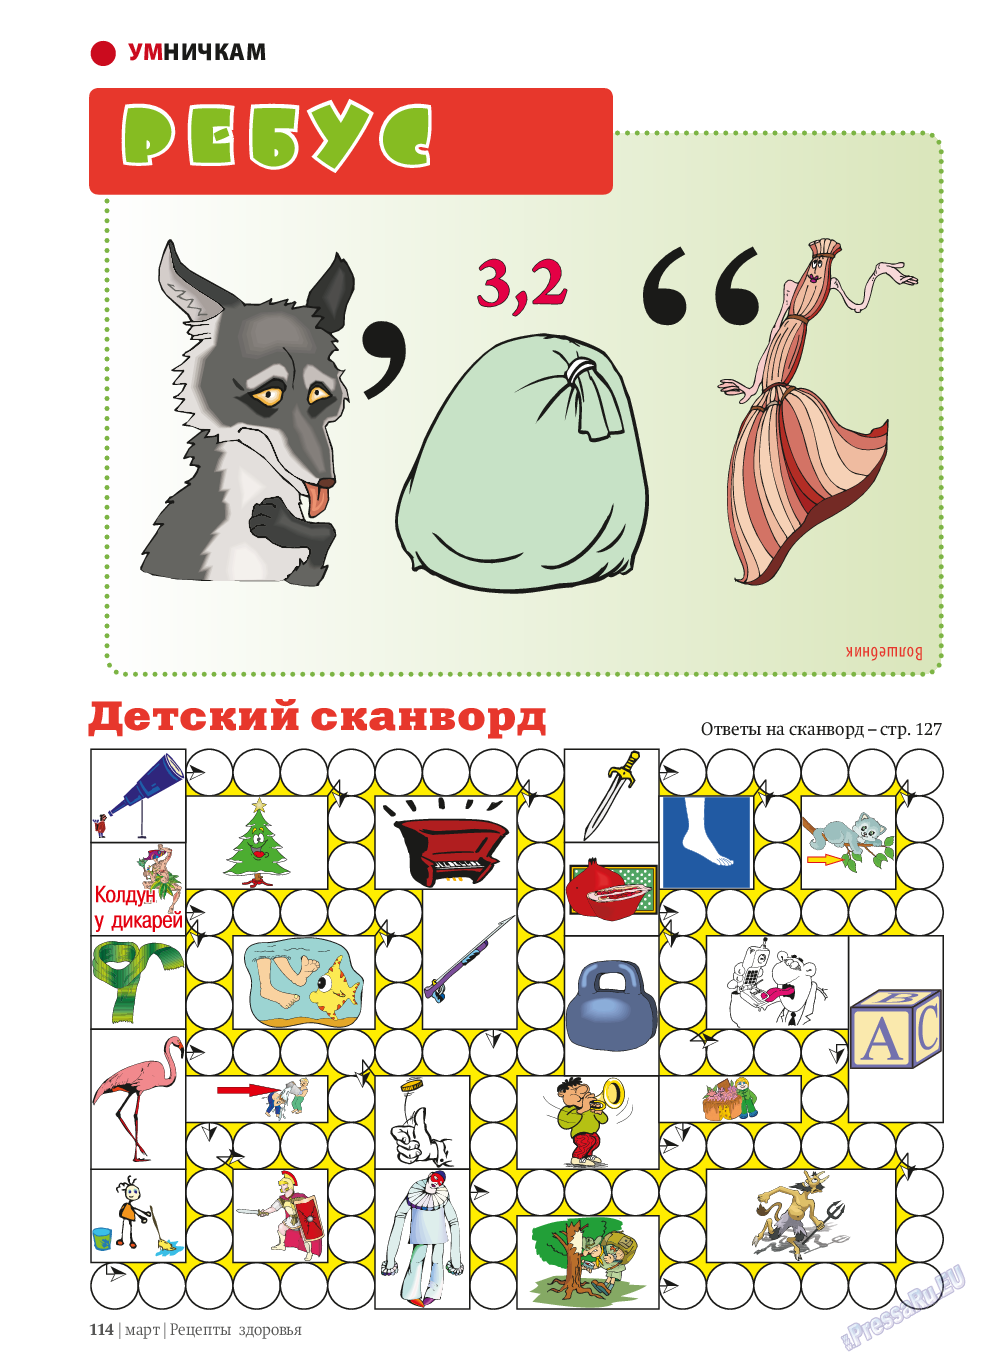 Рецепты здоровья, журнал. 2014 №58 стр.114